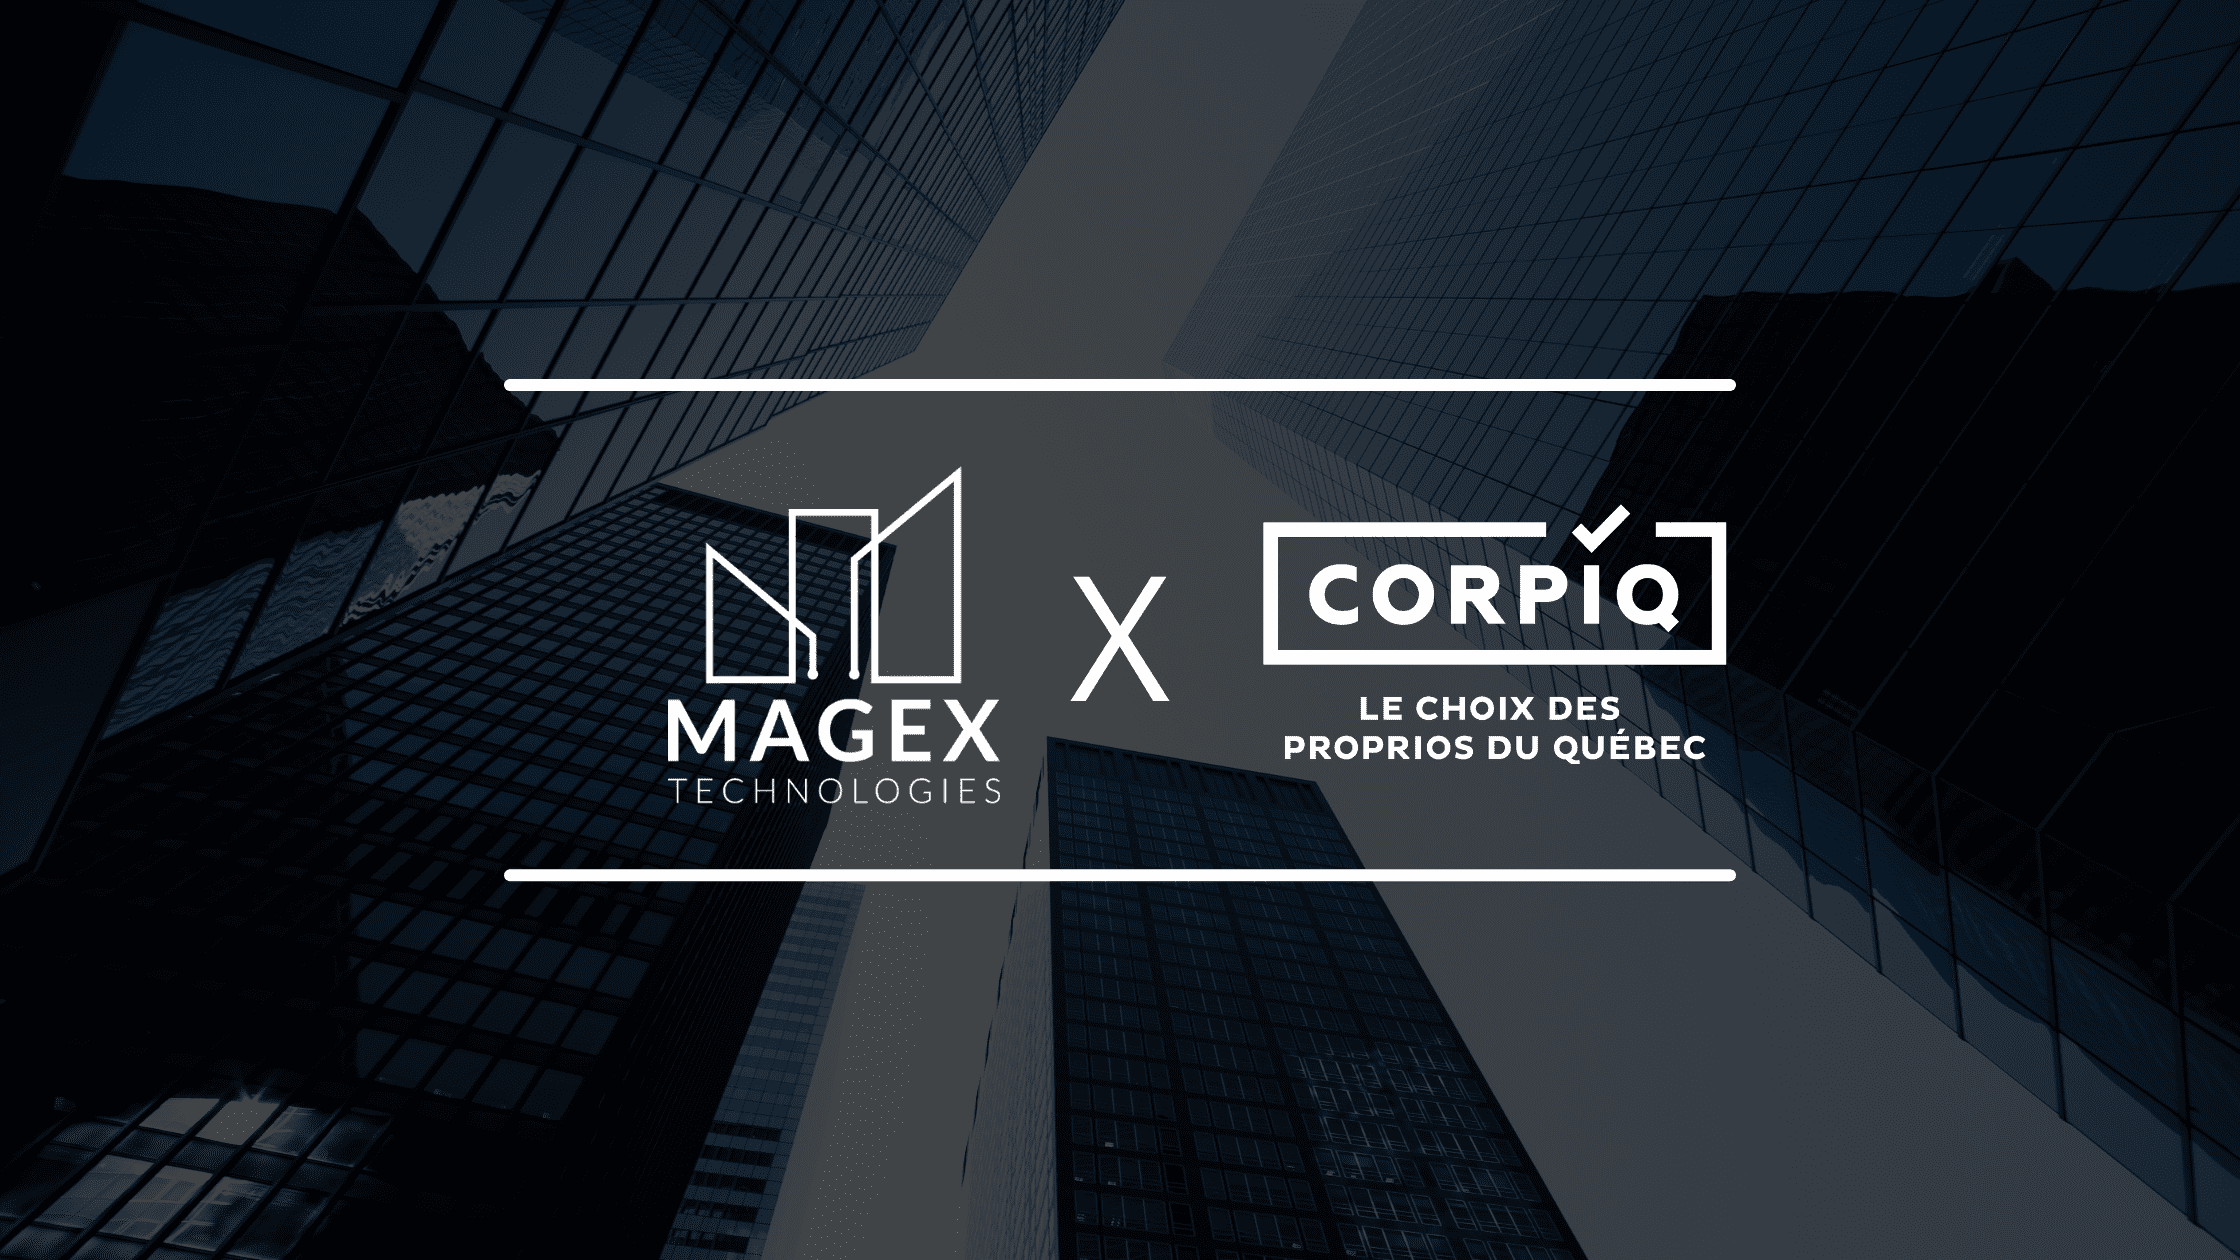 L’association Magex Technologies X CORPIQ